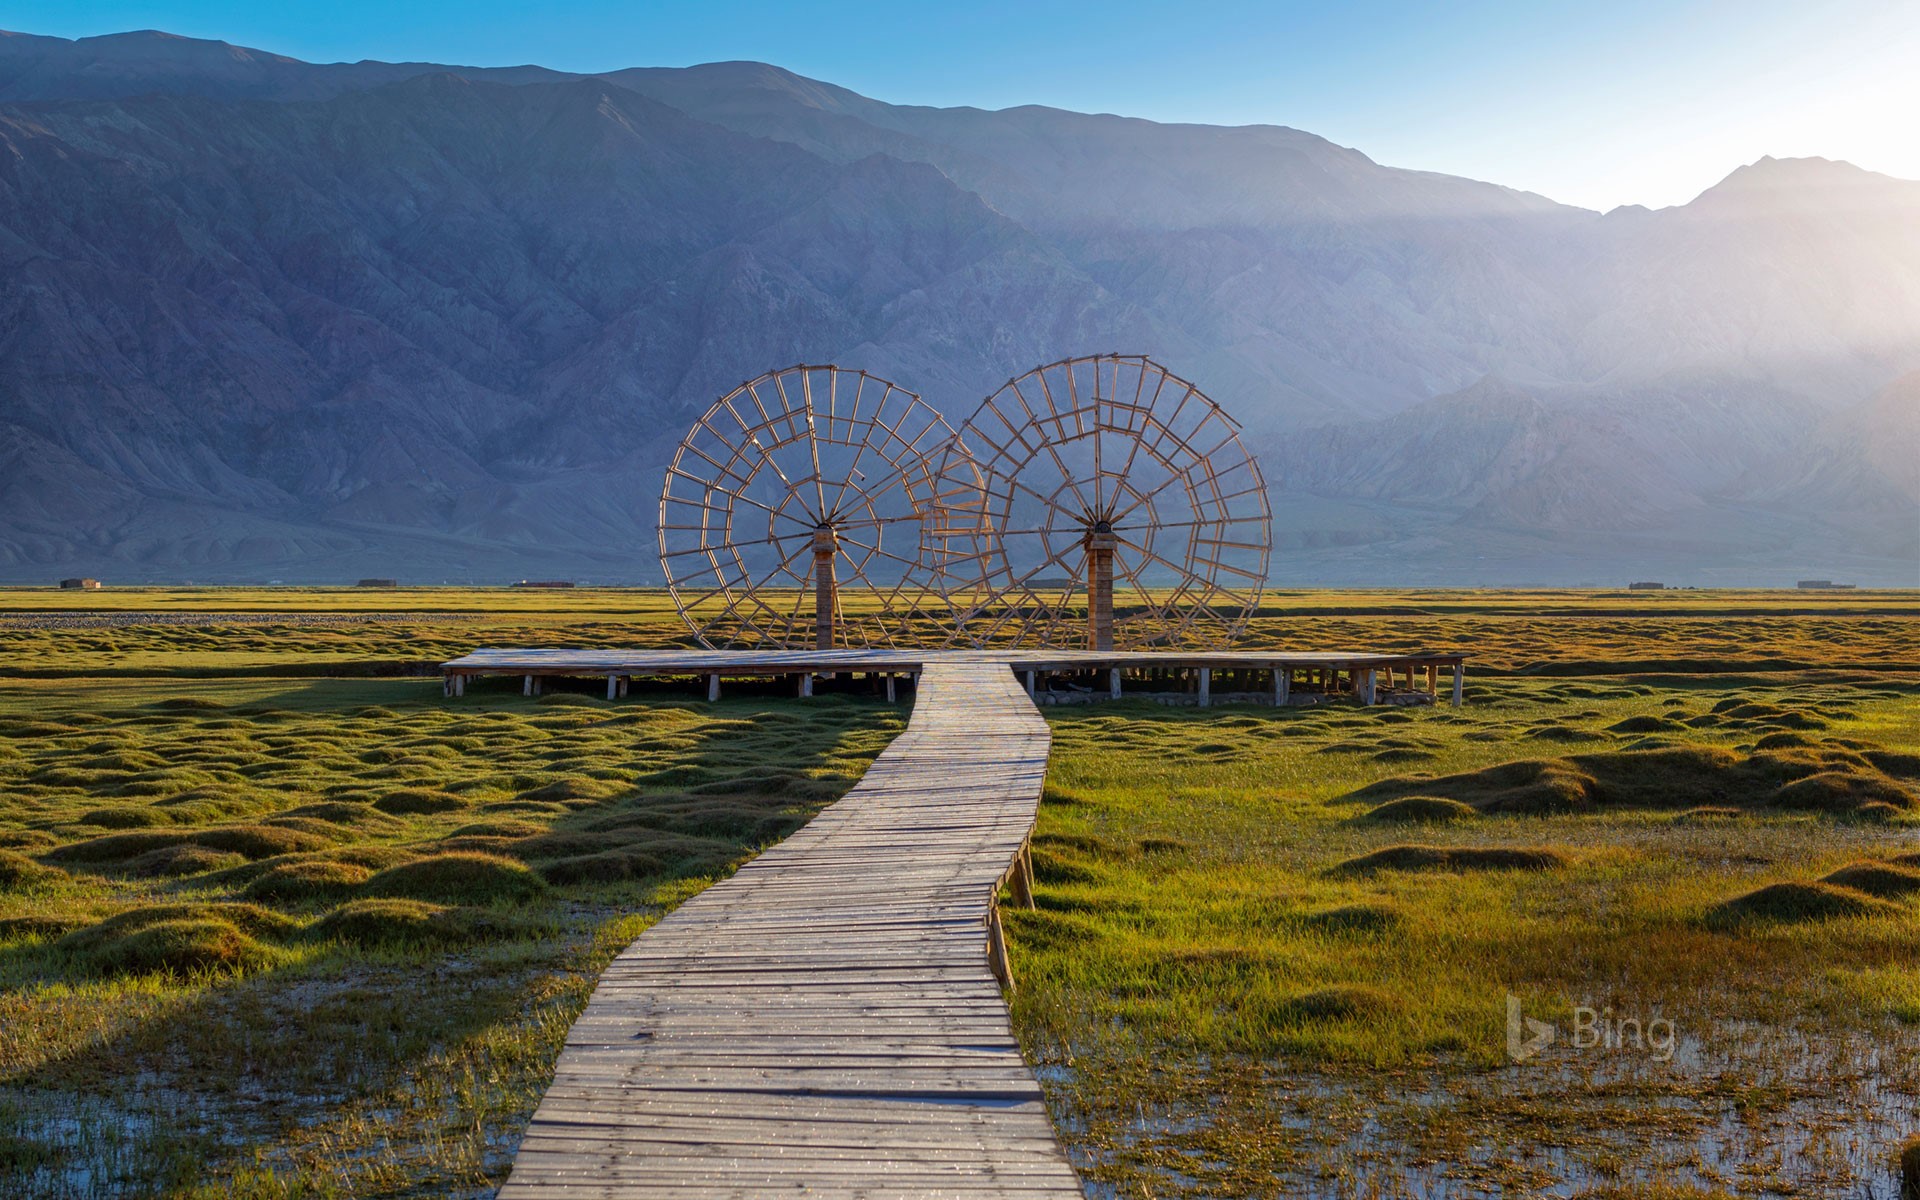 Water wheels in the Tashkurgan Grassland, Tashkurgan Tajik Autonomous County, Xinjiang, China